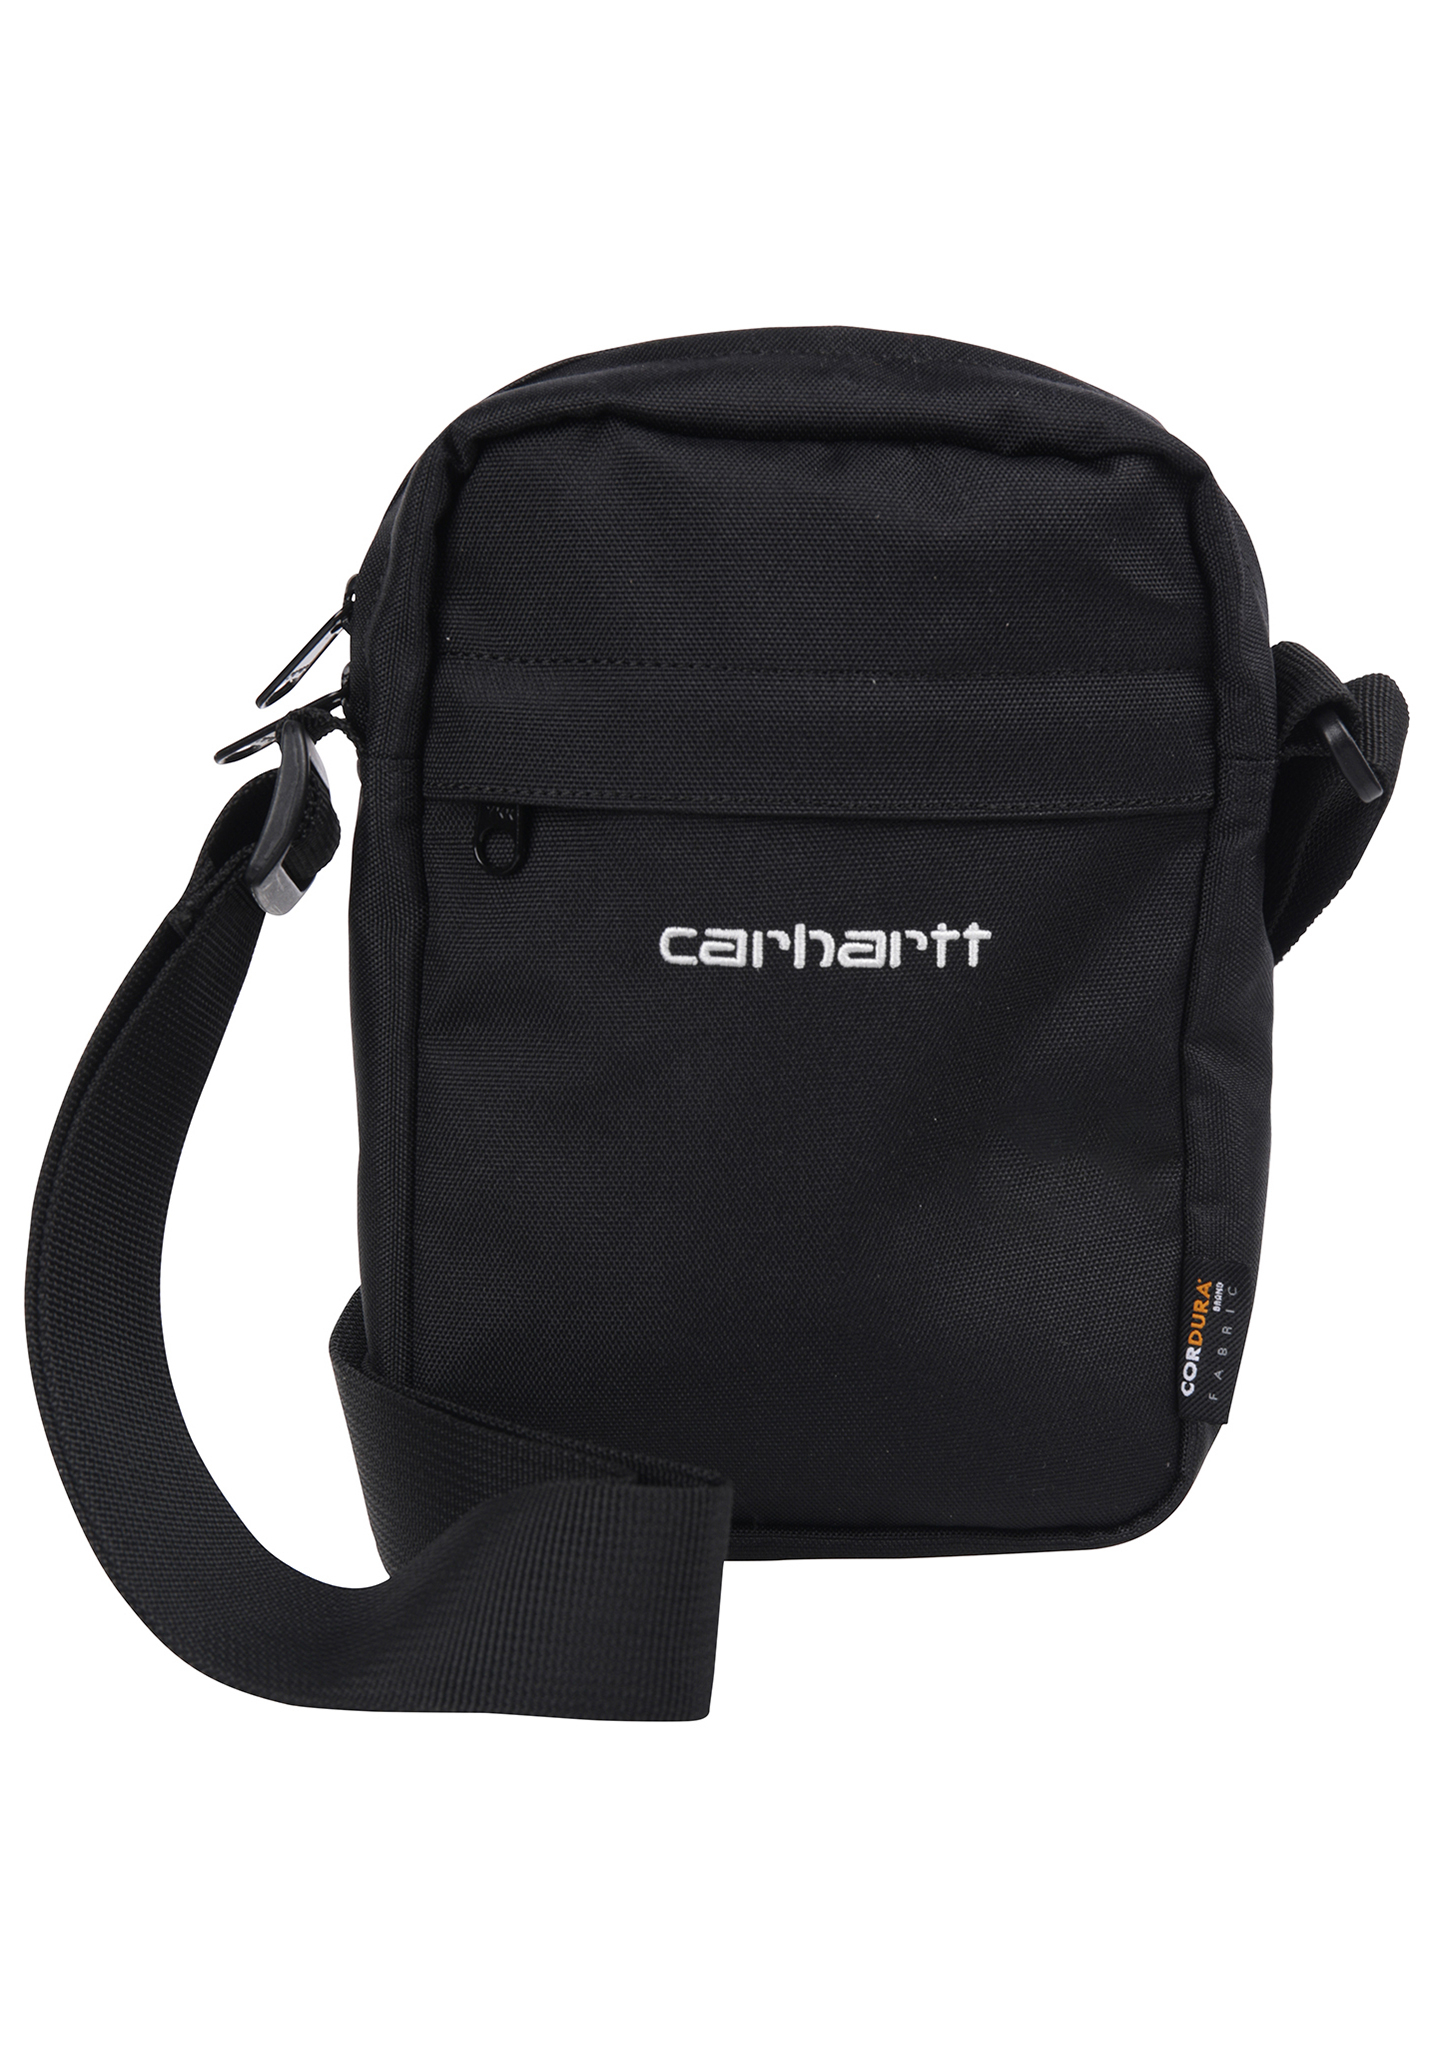 Carhartt WIP Payton Pouch Tasche schwarz / weiß One Size